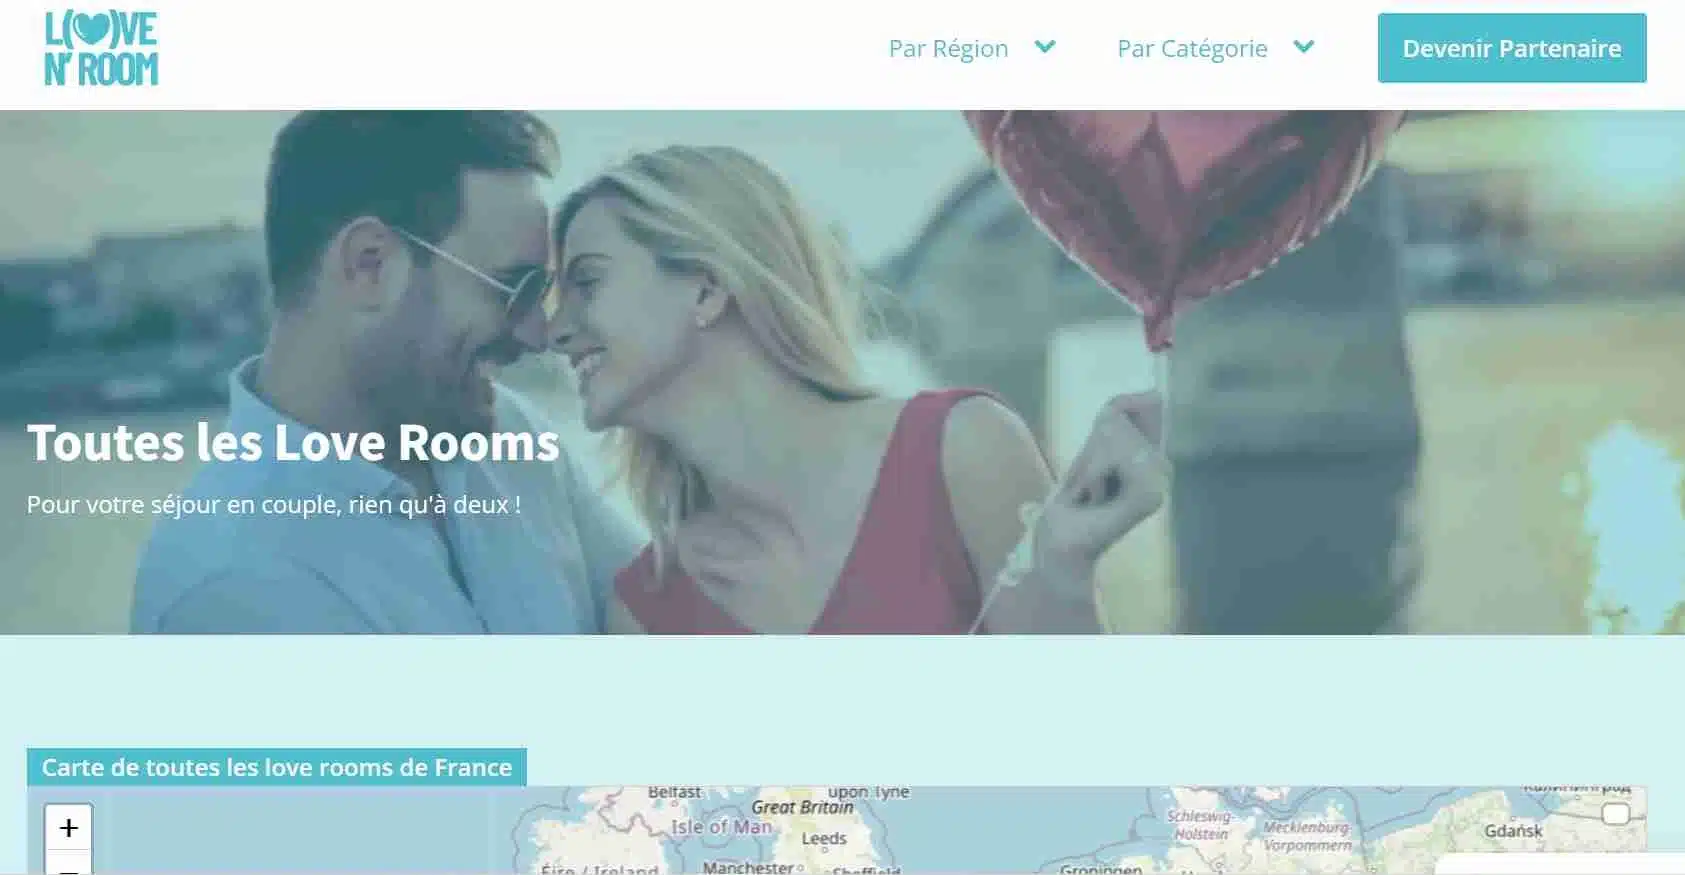 Capture d'écran pour réserver une love room avec lovenroom.fr